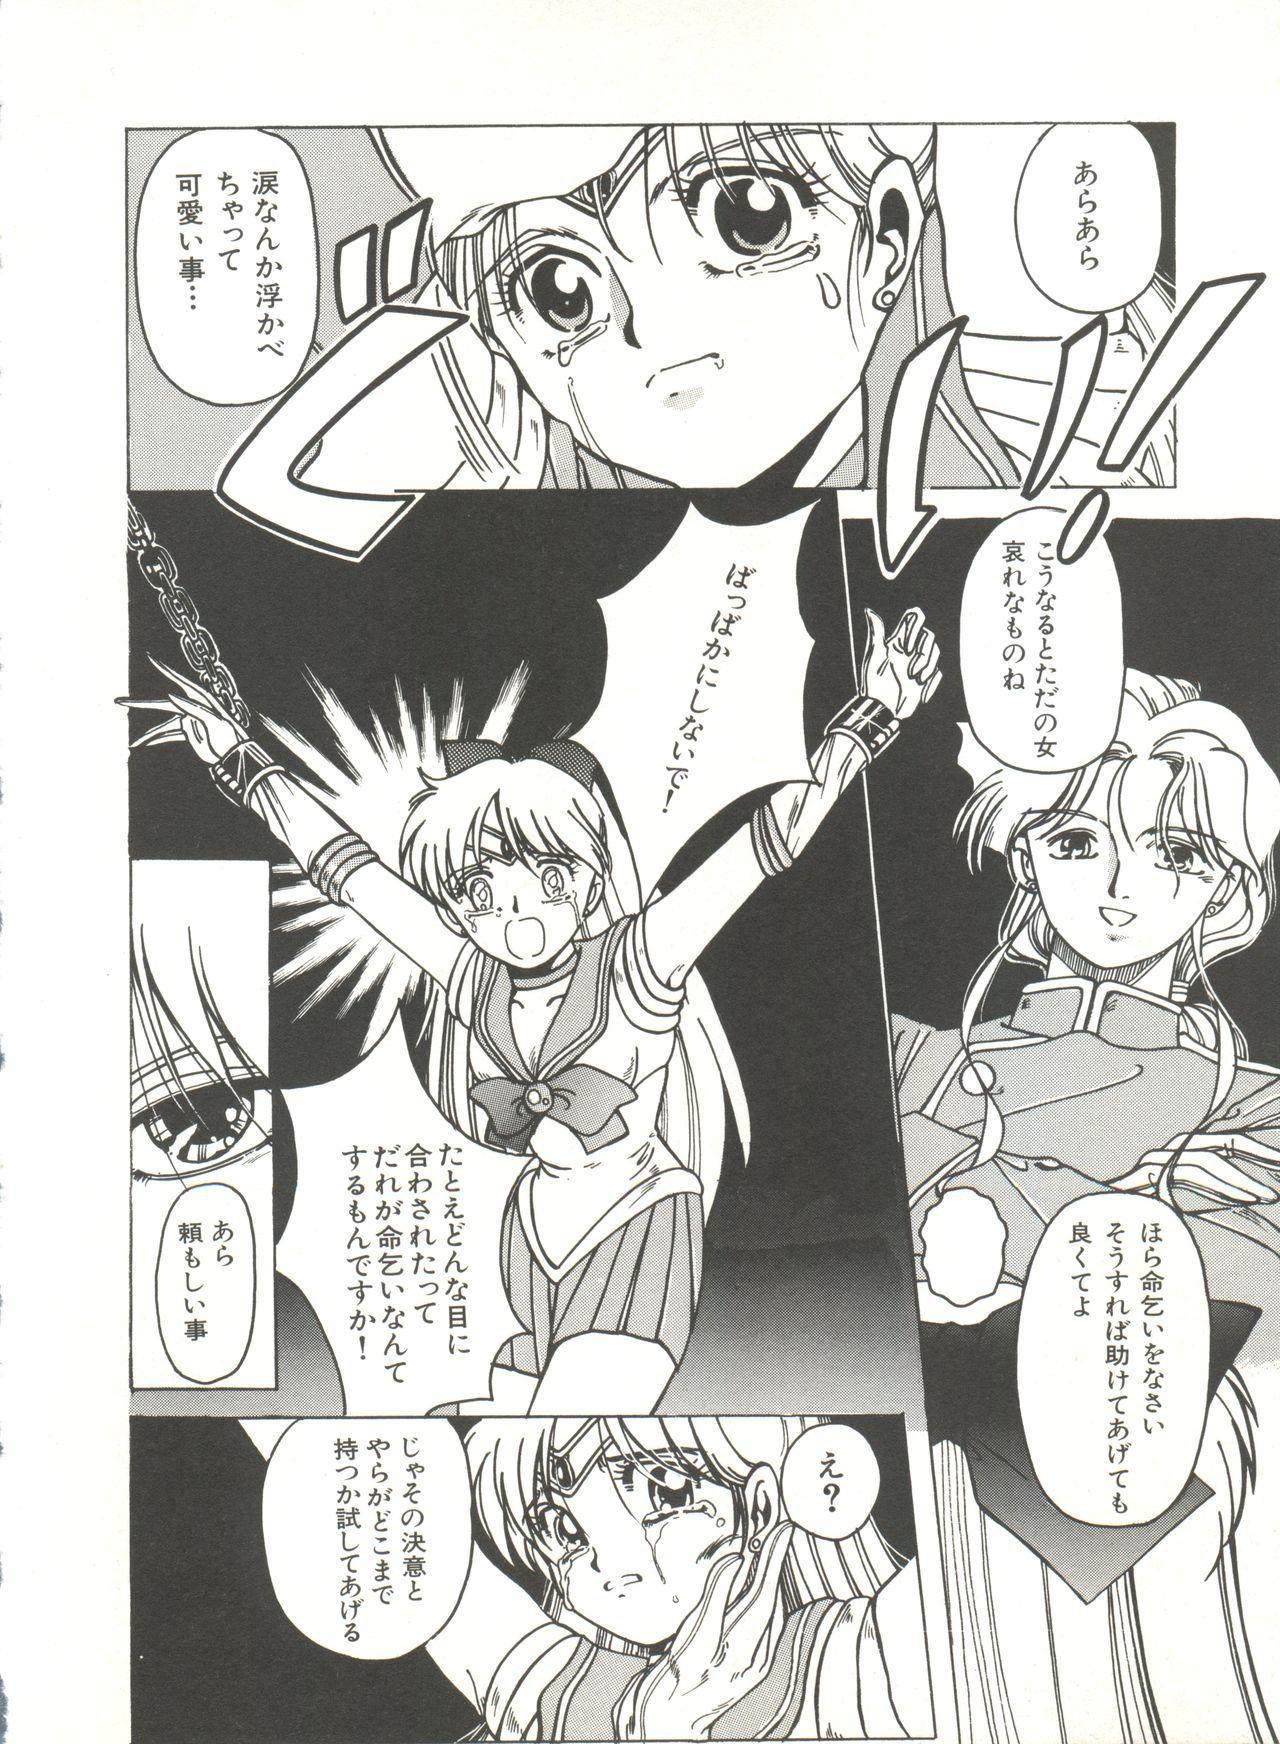 Tribbing Bishoujo Doujinshi Anthology 3 - Moon Paradise 2 Tsuki no Rakuen - Sailor moon Amateurs - Page 9